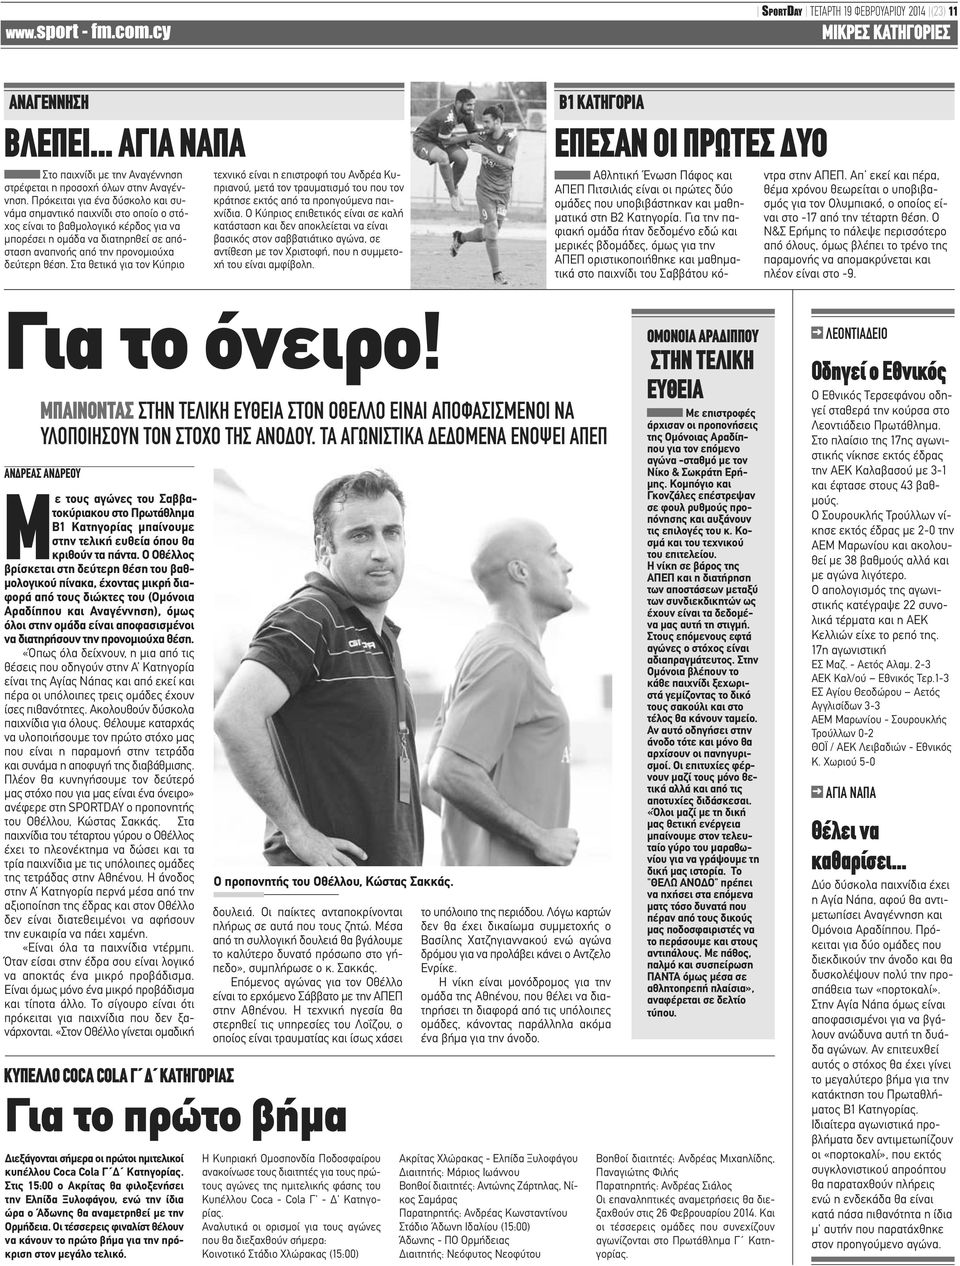 Στα θετικά για τον Κύπριο τεχνικό είναι η επιστροφή του Ανδρέα Κυπριανού, μετά τον τραυματισμό του που τον κράτησε εκτός από τα προηγούμενα παιχνίδια.